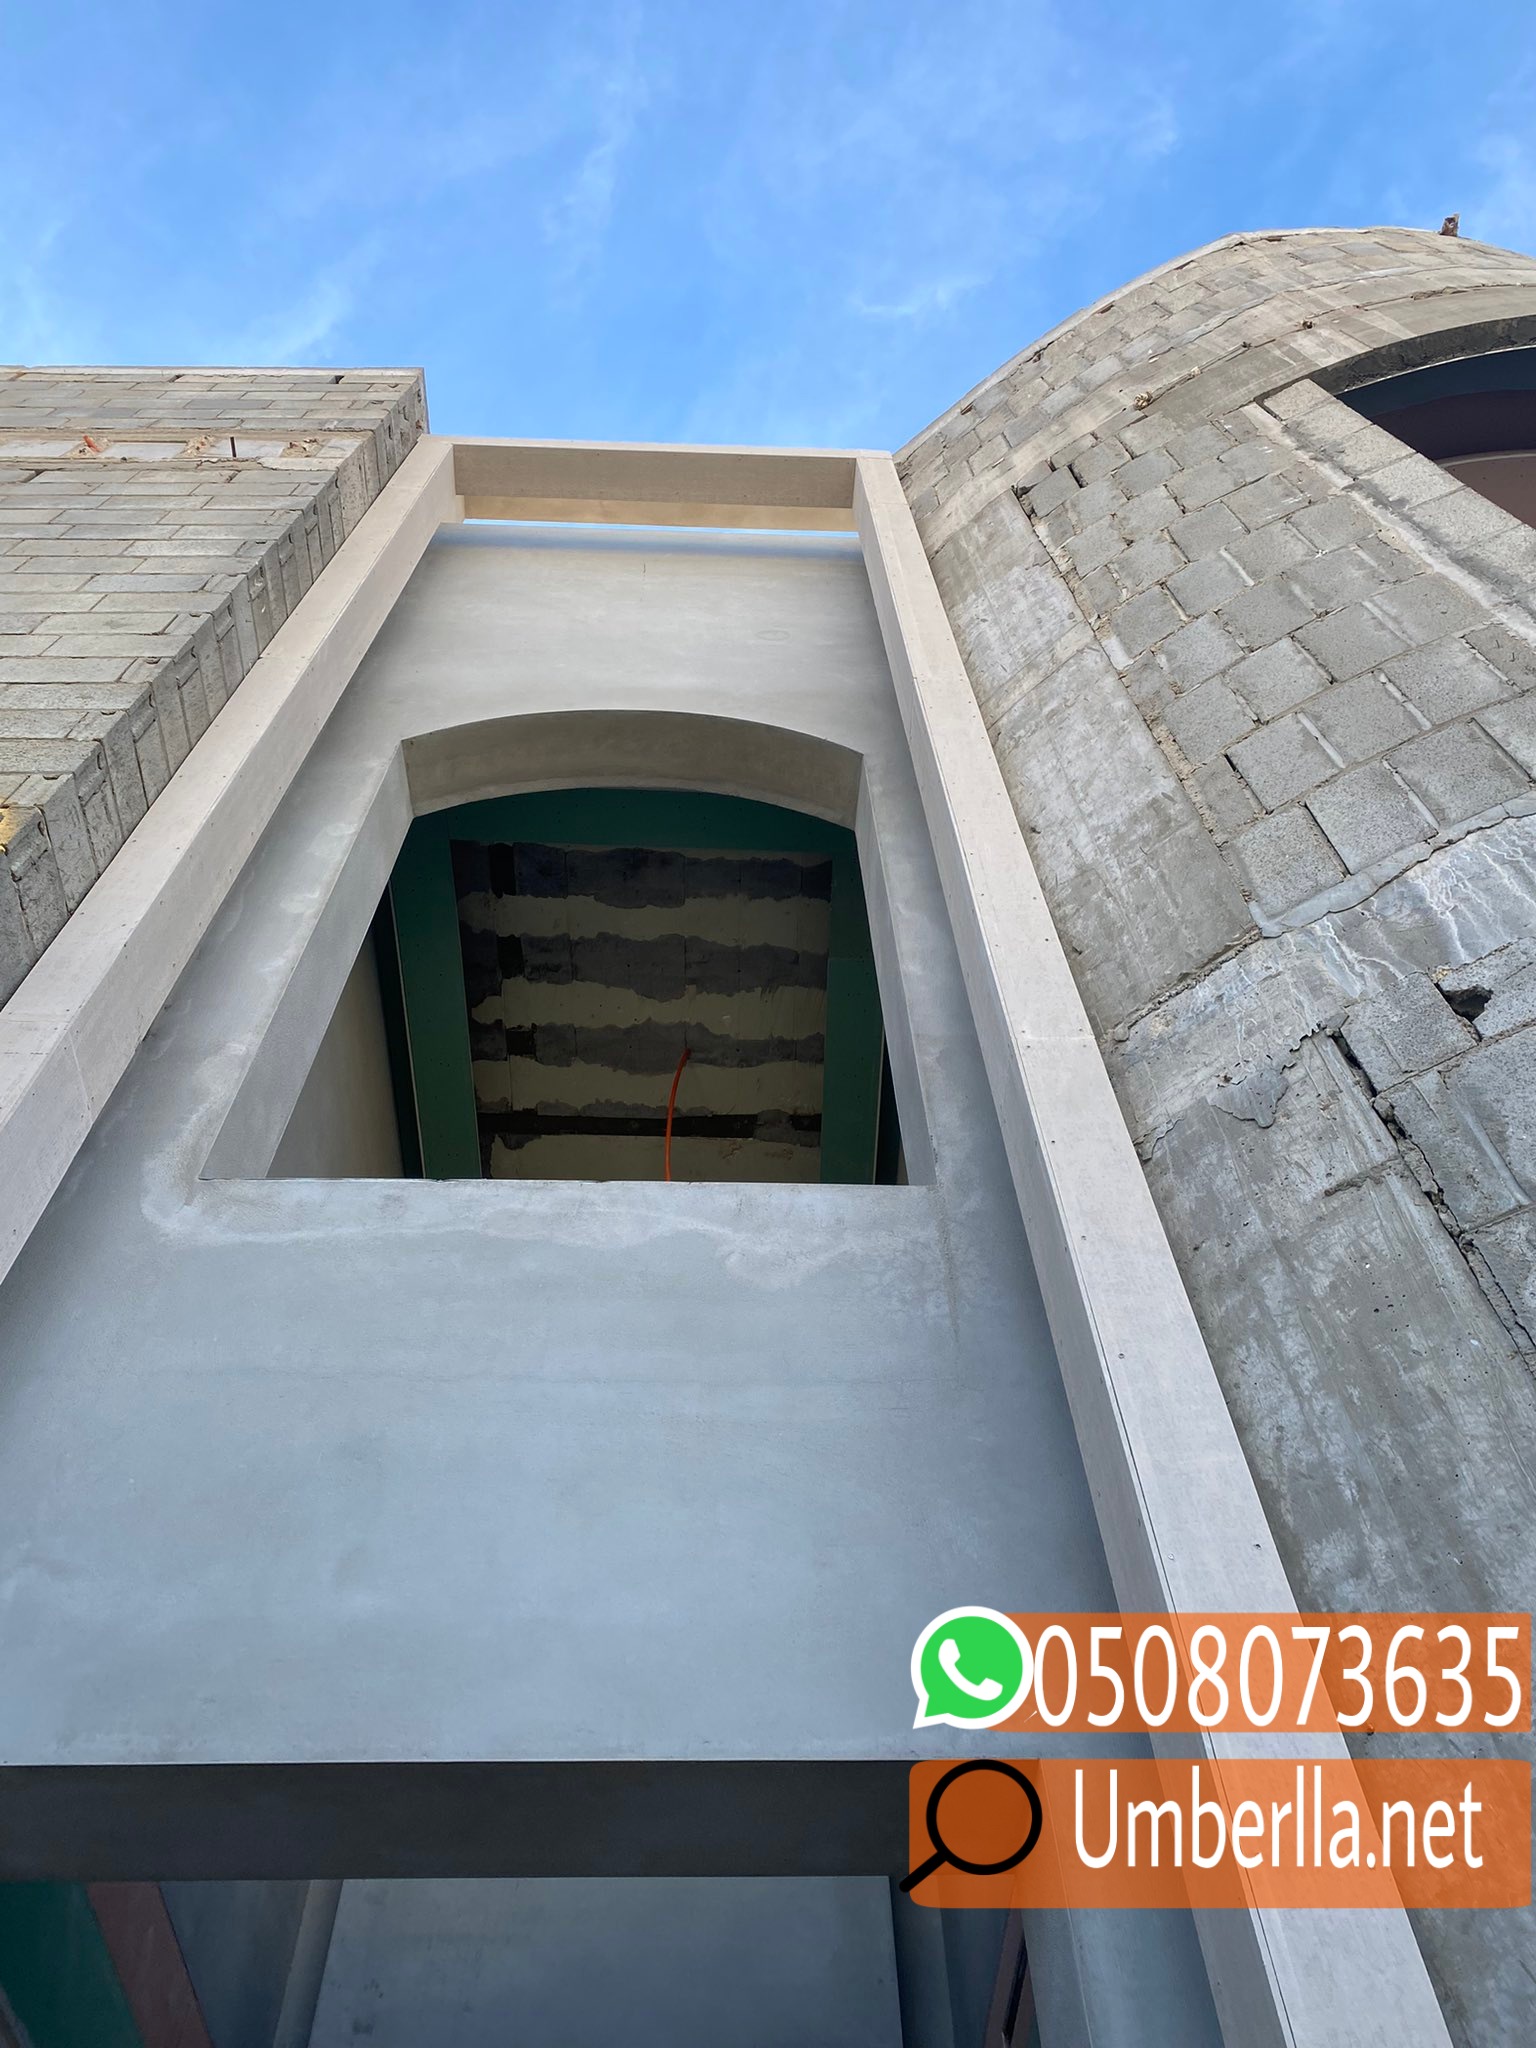 بناء غرف اسمنت بورد في الرياض , 0508073635 P_2315jg2hb6